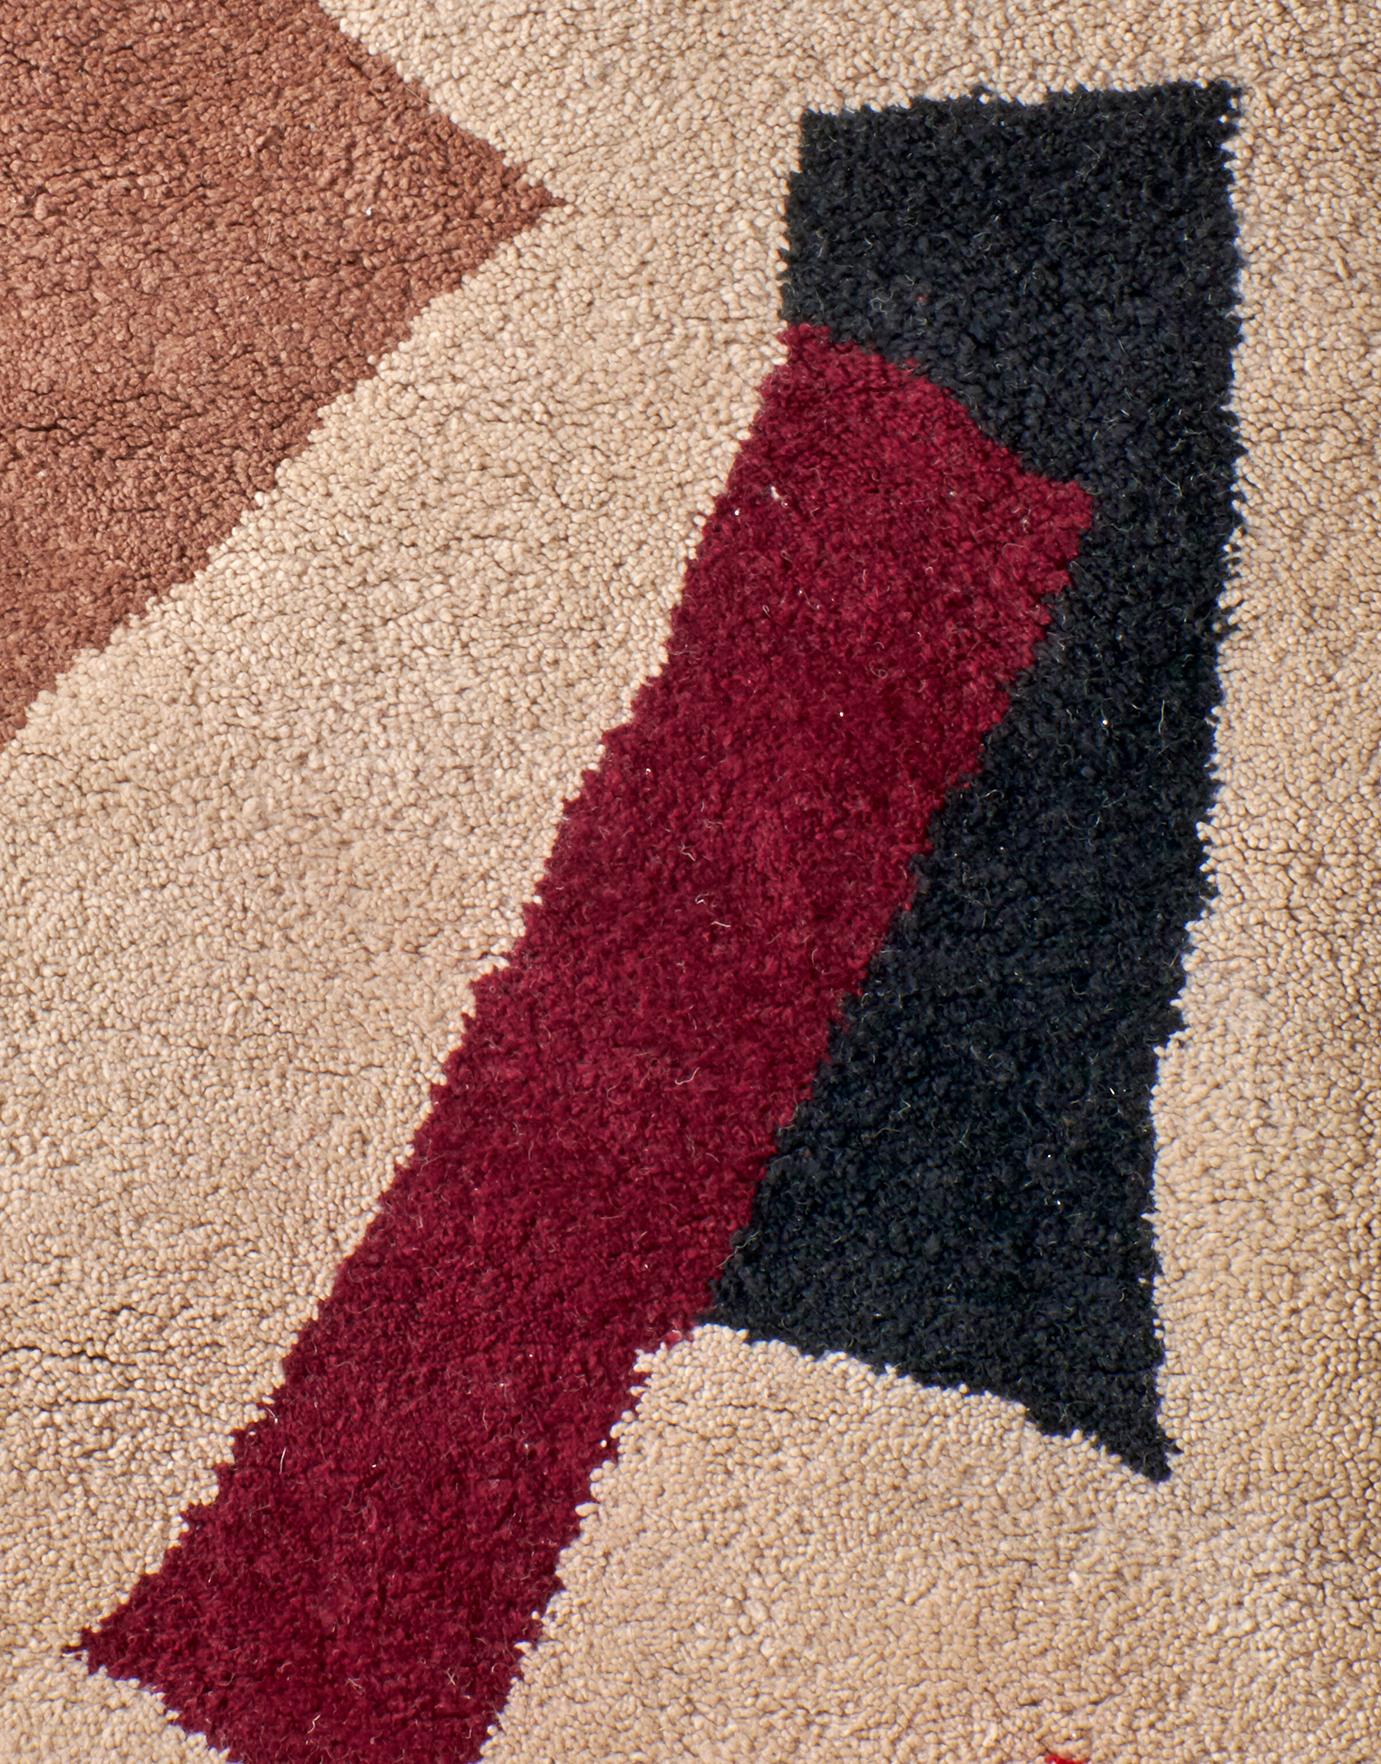 Die Entwine-Kollektion von Decken und Teppichen von Maria Jeglinska zeigt eine eher zufällige Anwendung von Farben und Linien, die Poesie des Rasters ist immer noch vorhanden, aber das Design bewegt sich auf seine Auflösung zu. Die